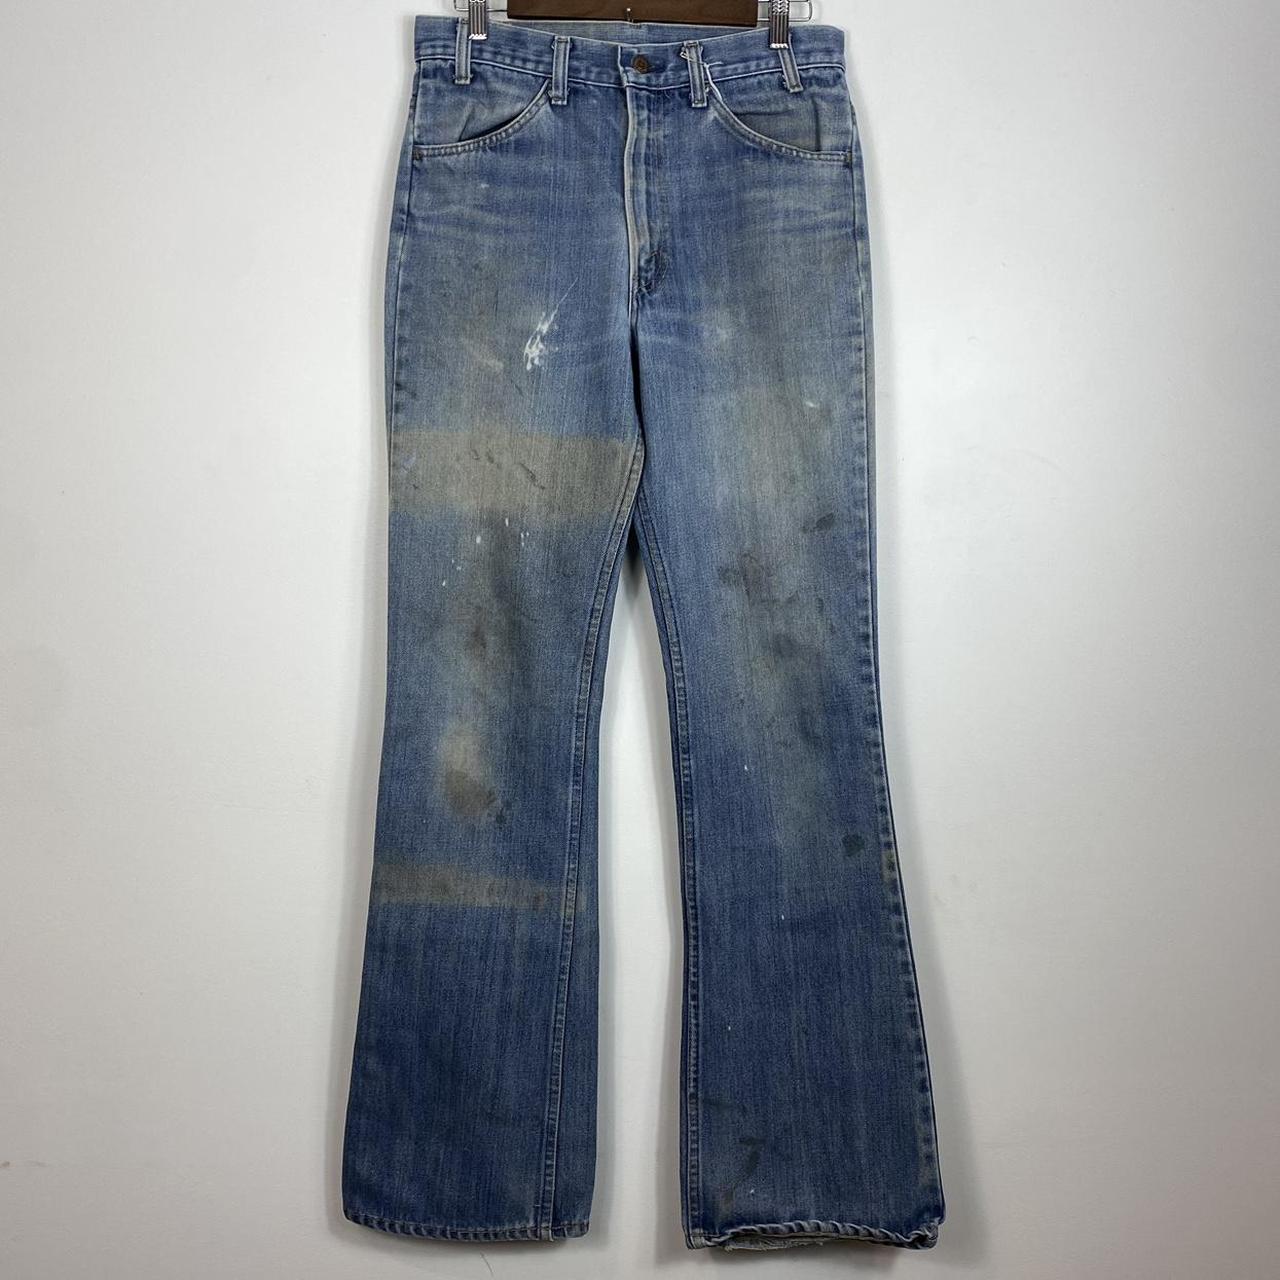 Vintage 70s Levi's 646 orange tab bell bottom jeans,... - Depop